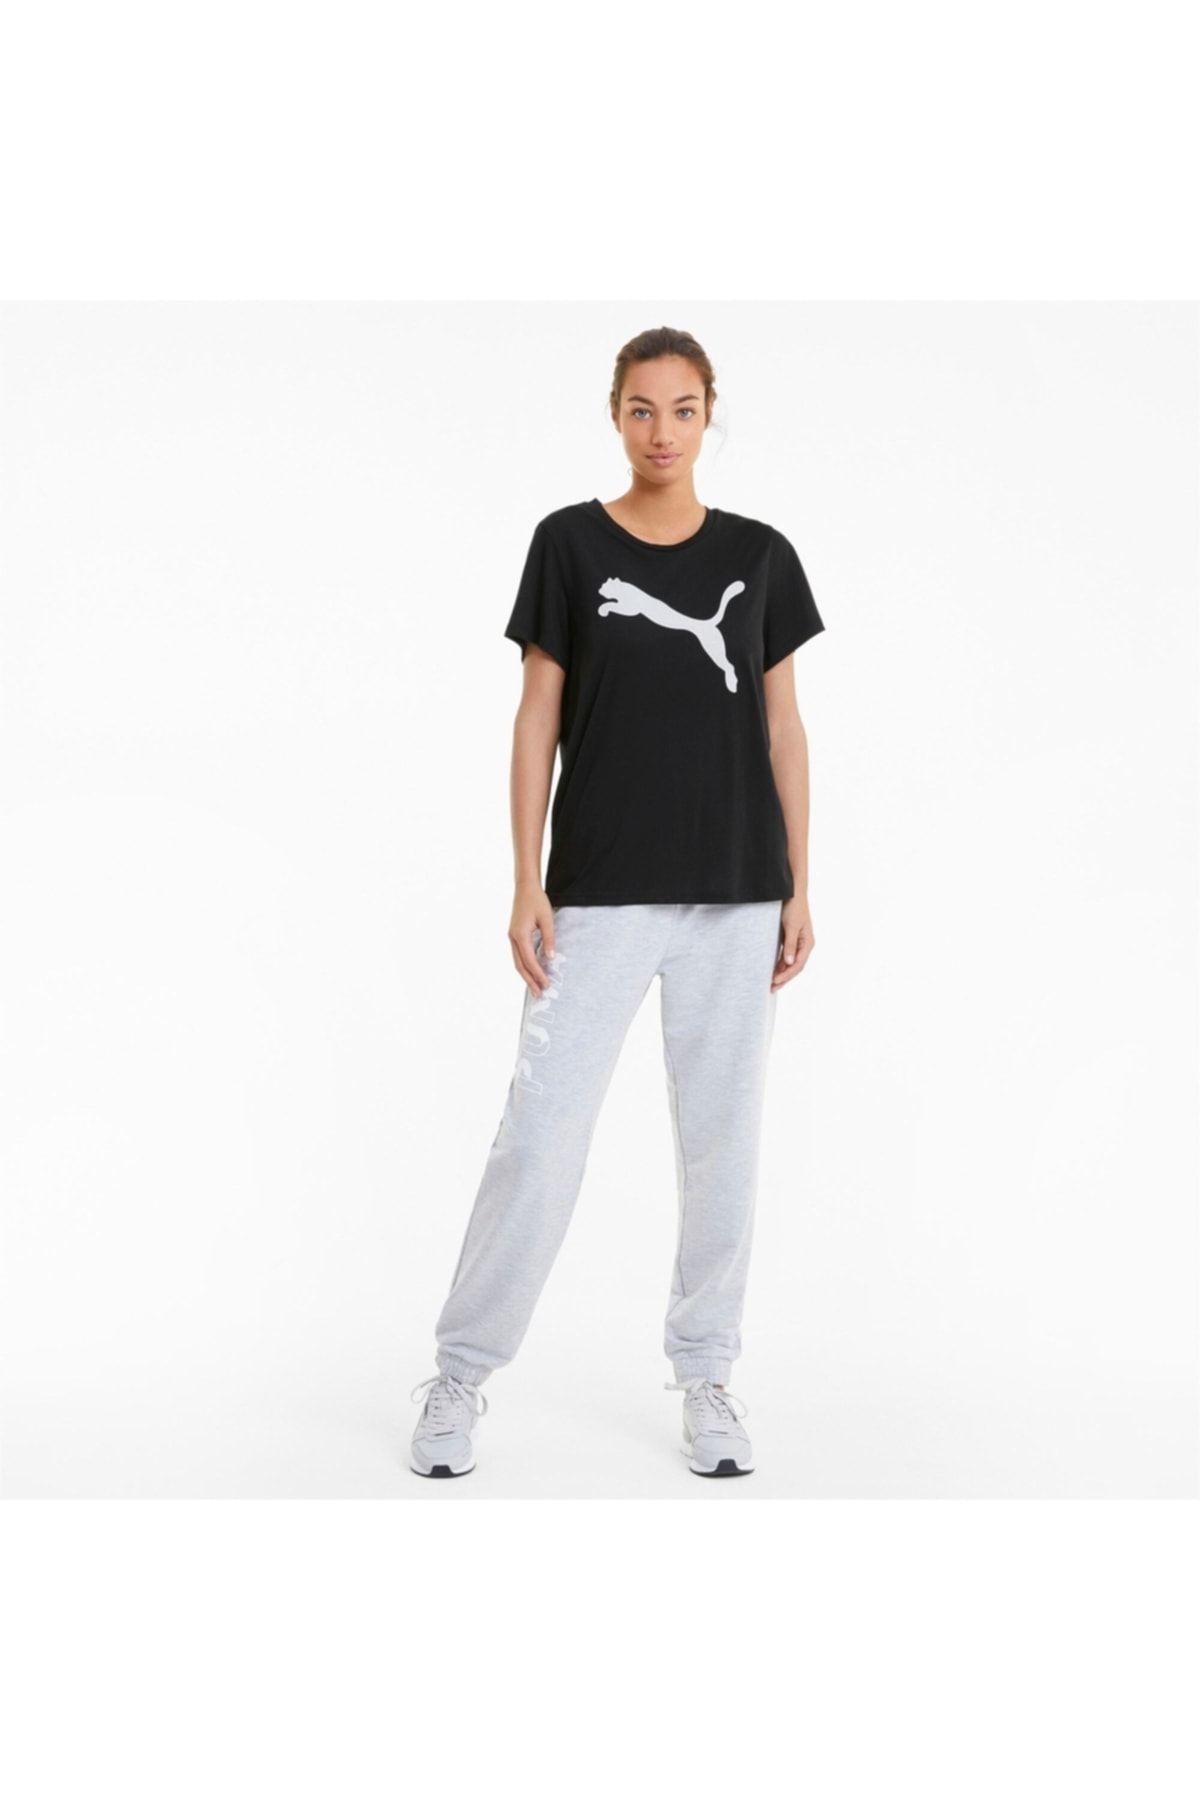 Puma Sports T-Shirt - Black - Trendyol